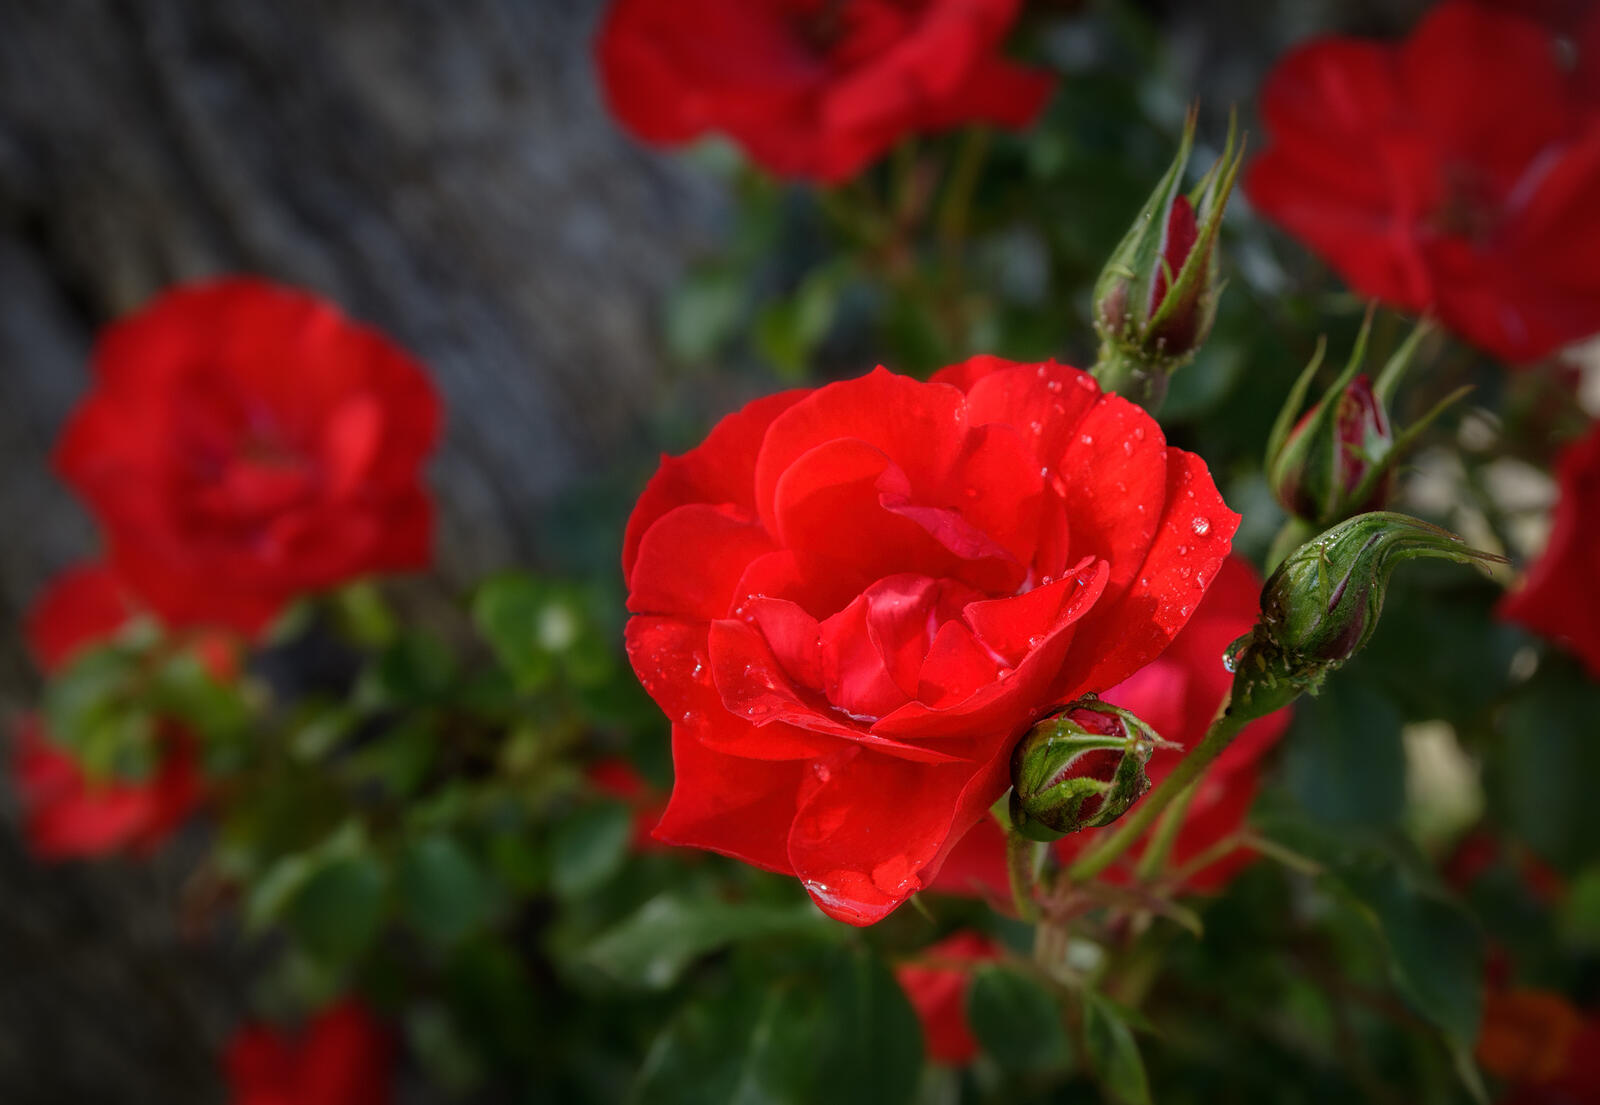 Обои дикий цветок кустарник розы на рабочий стол